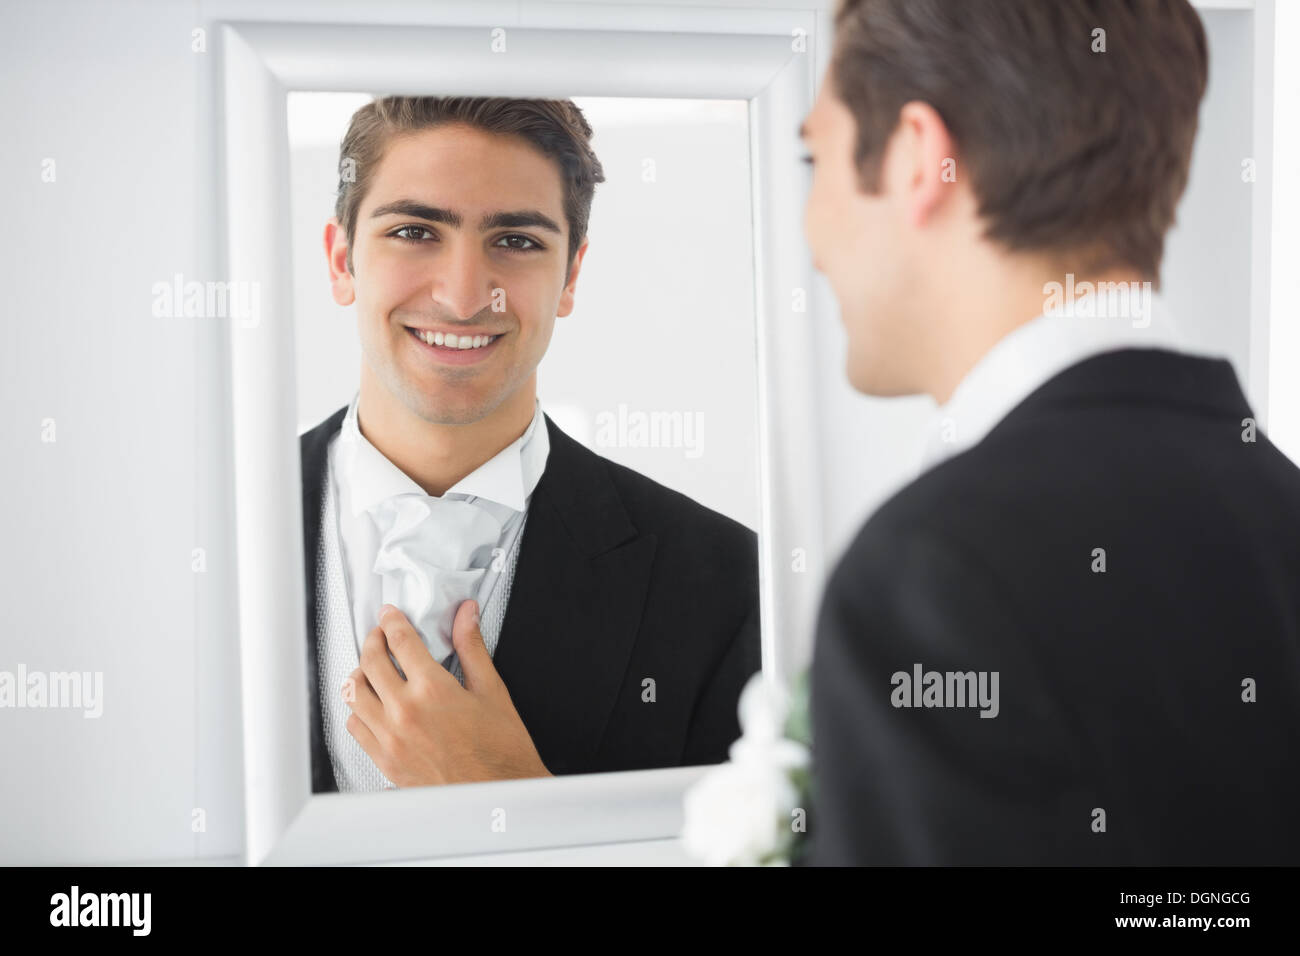 Fröhliche junge Bräutigam stehen vor einem Spiegel Stockfoto